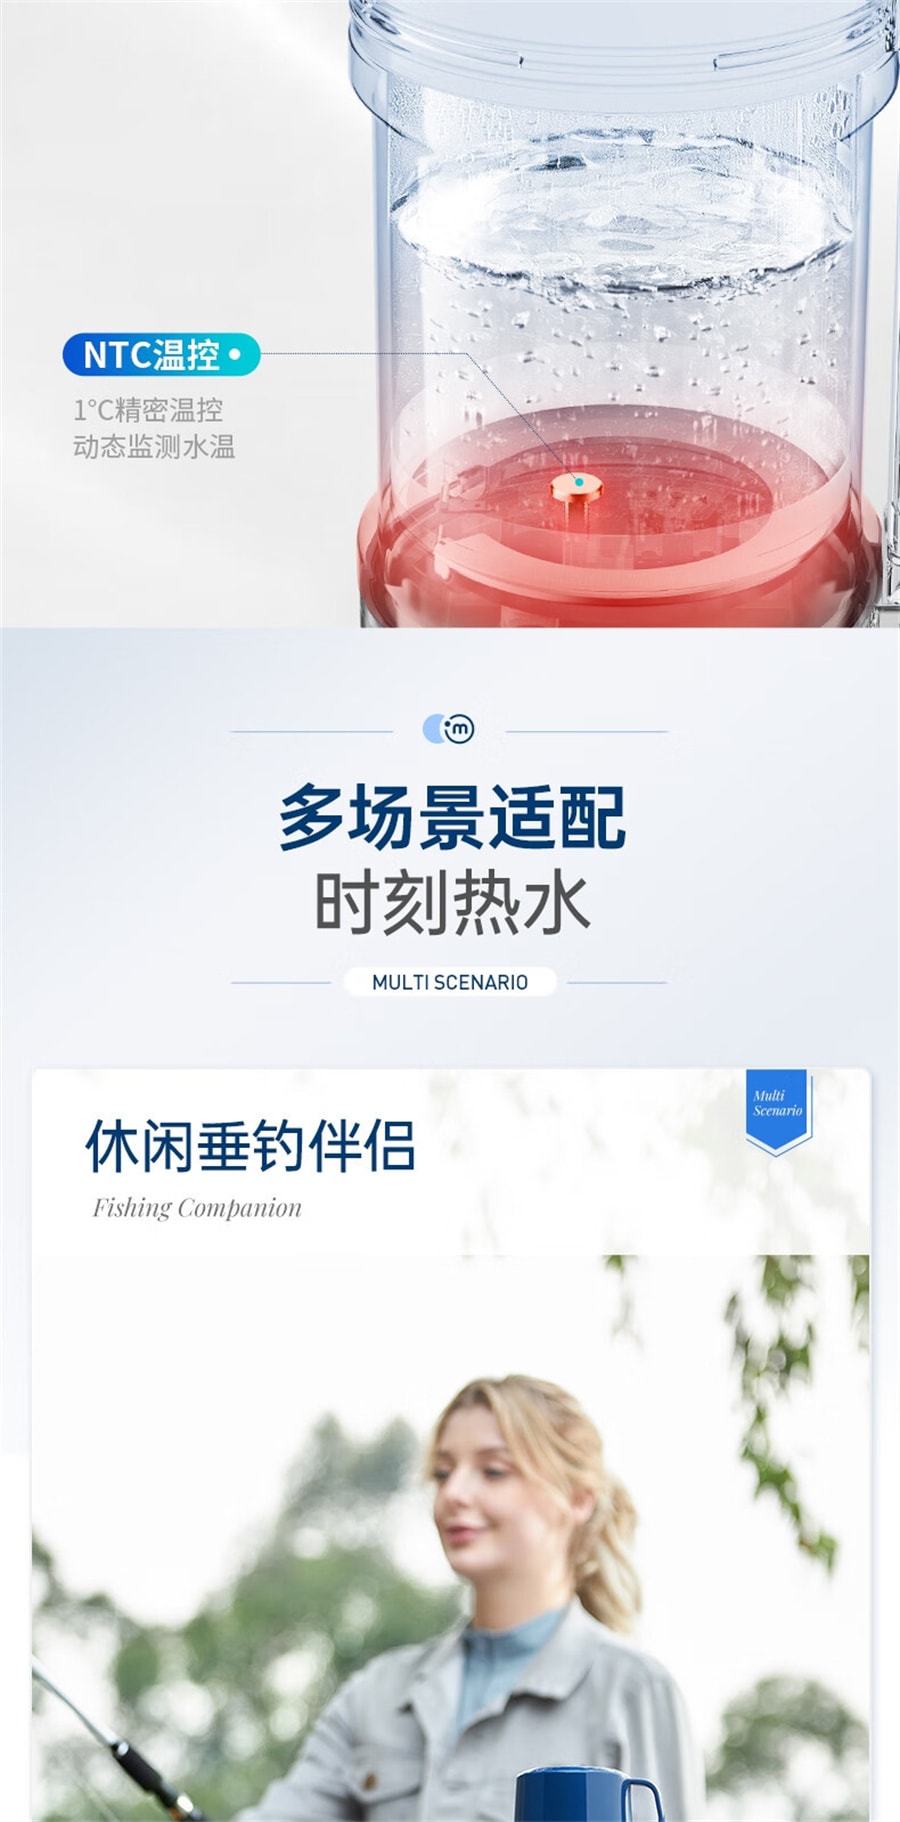 【中国直邮】摩飞  电热水壶便携式电热水壶旅行加热消息恒温保温杯  绿色